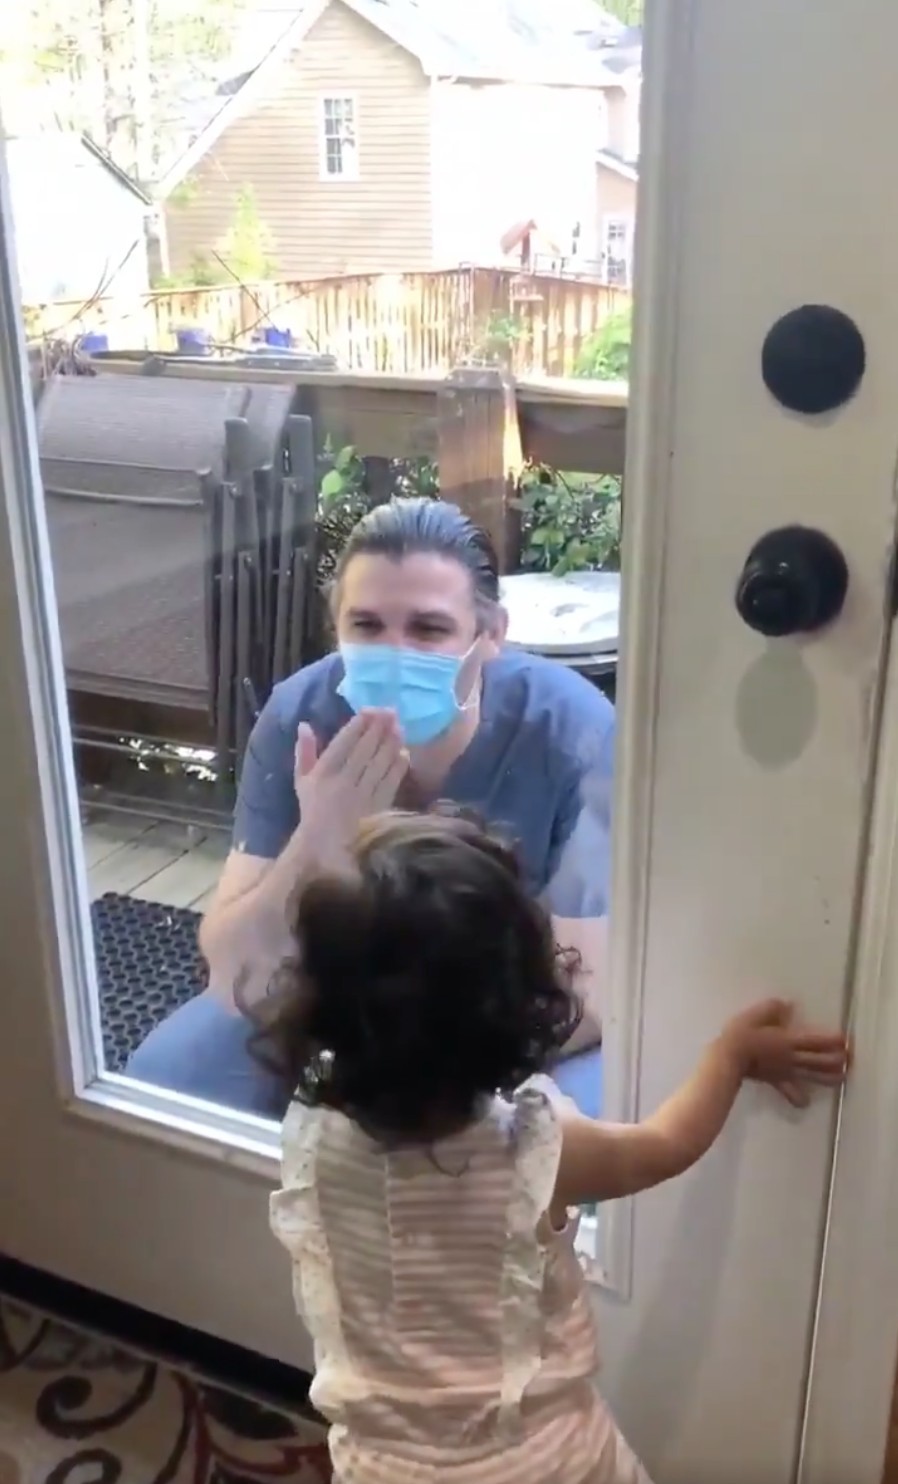 一名醫生爸爸站在家門前，隔著玻璃與女兒飛吻，女兒想開門迎接爸爸不果，於是哭了起來，令人非常心酸。